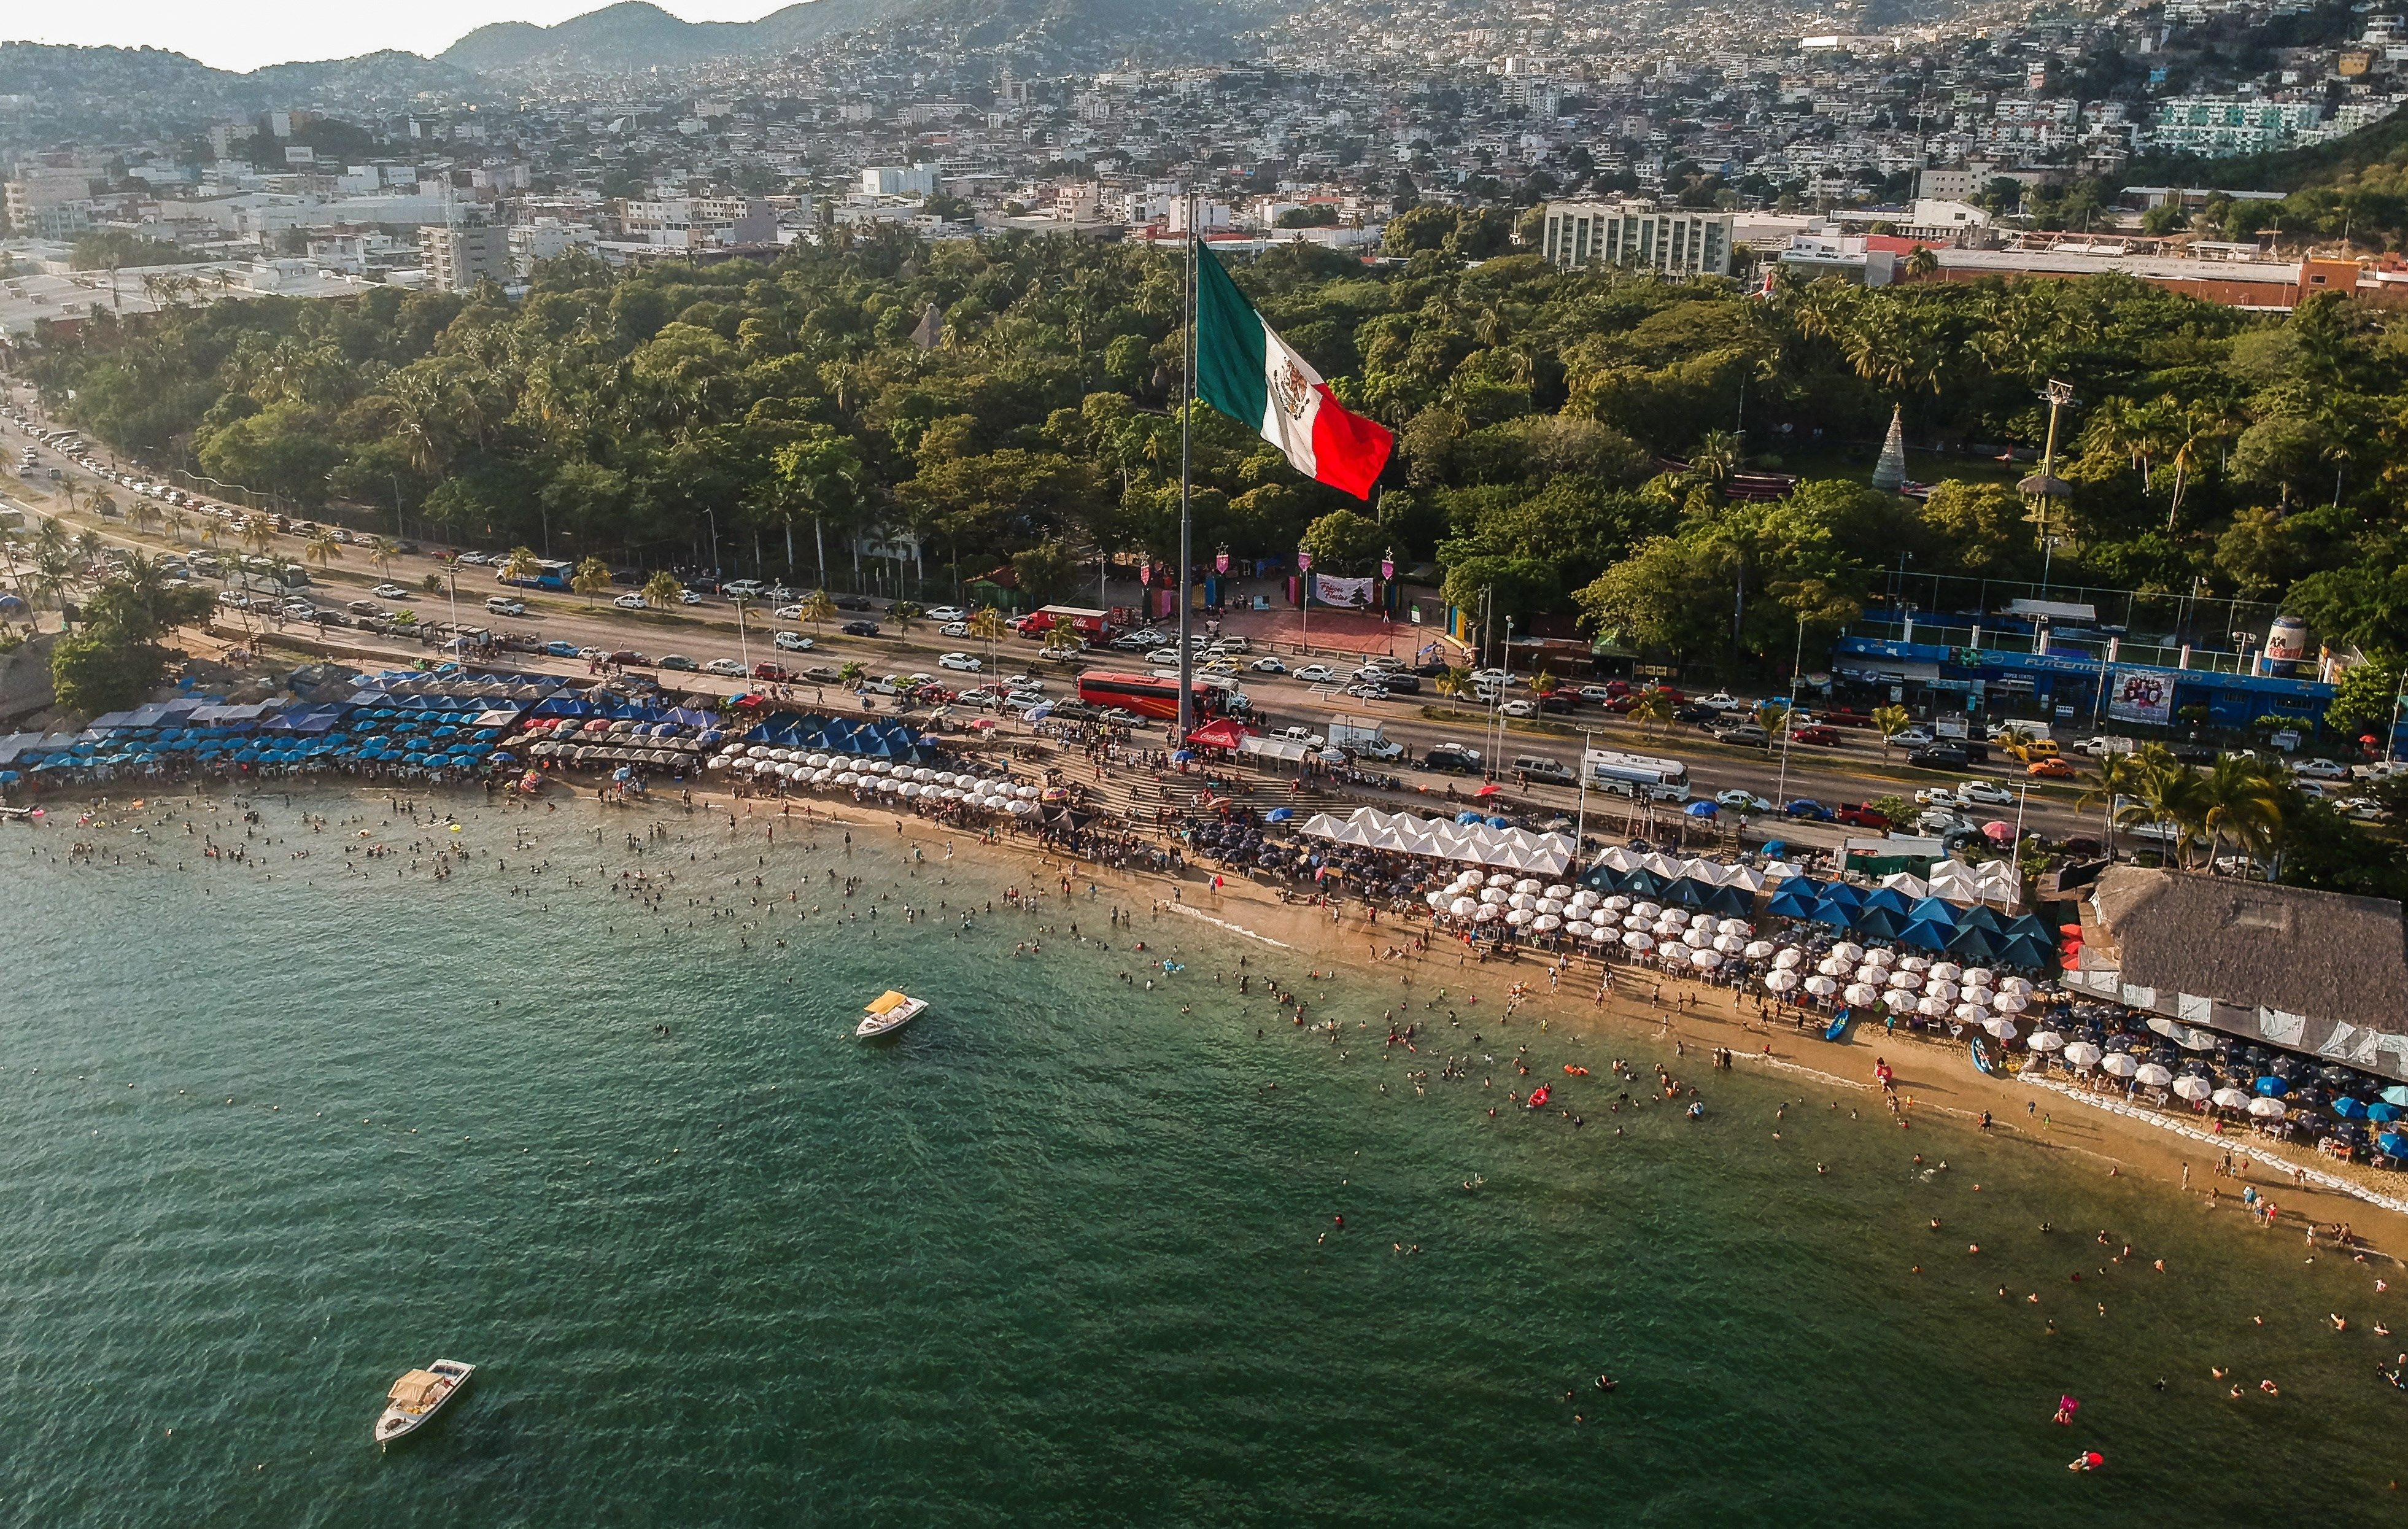  Turistas dejan 42 toneladas de basura al día en Acapulco